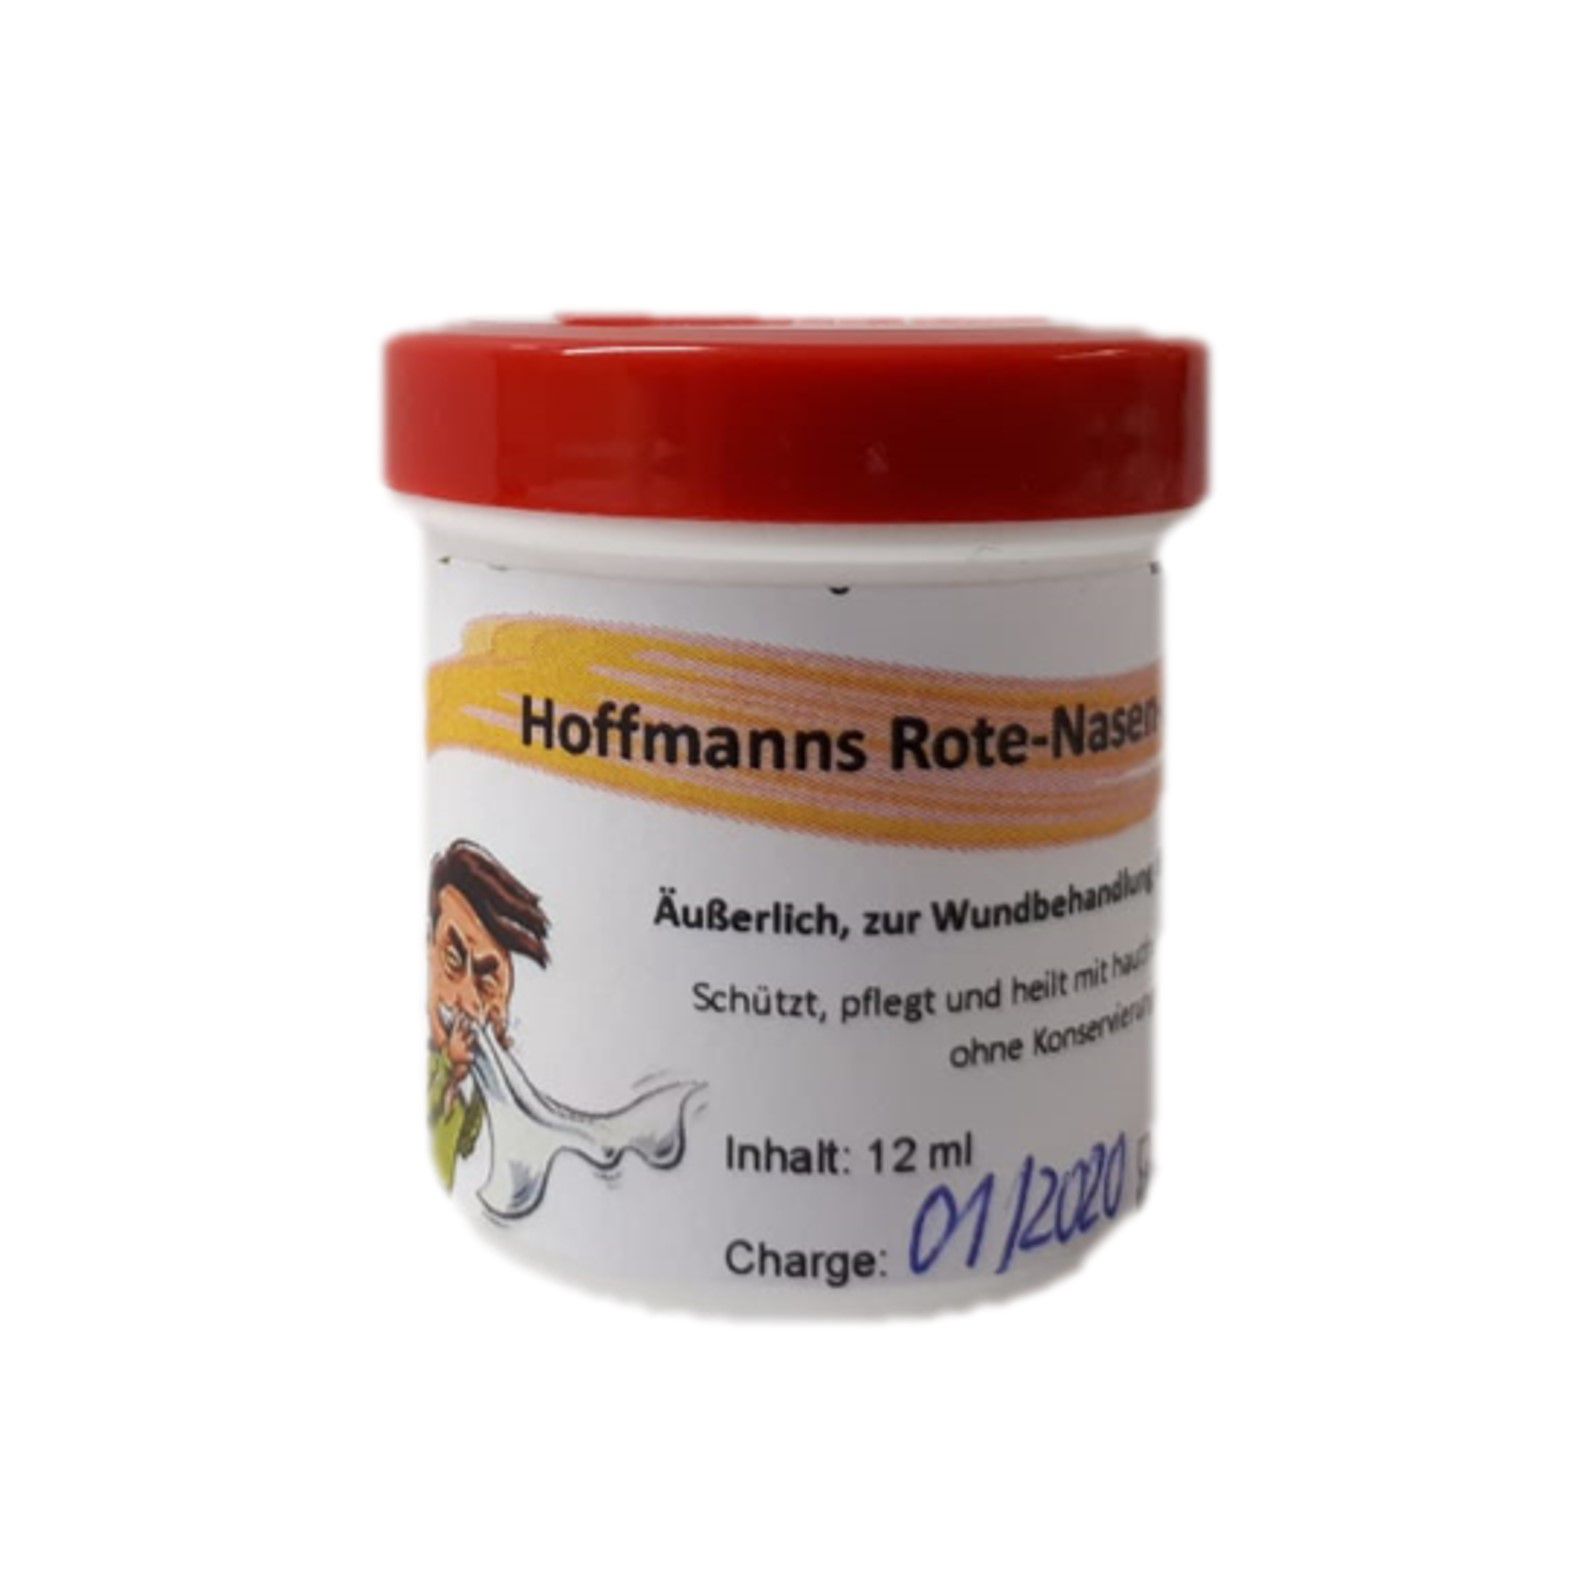 Hoffmann`s Rote-Nasen-Salbe zur äußerlichen Wundbehandlung